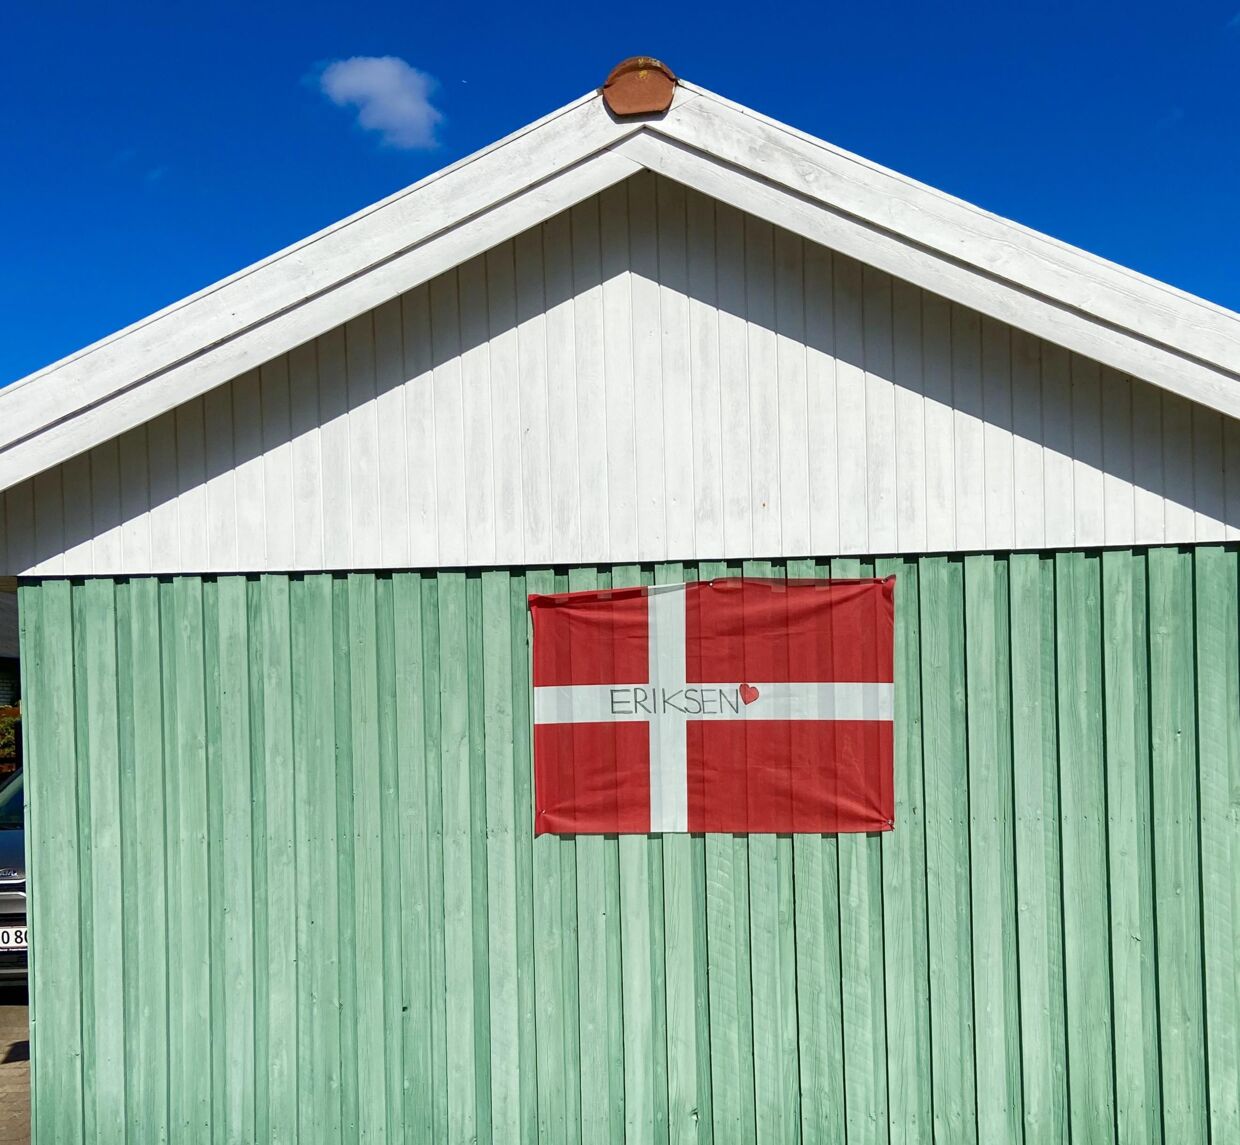 TIne Mølgaads flag.